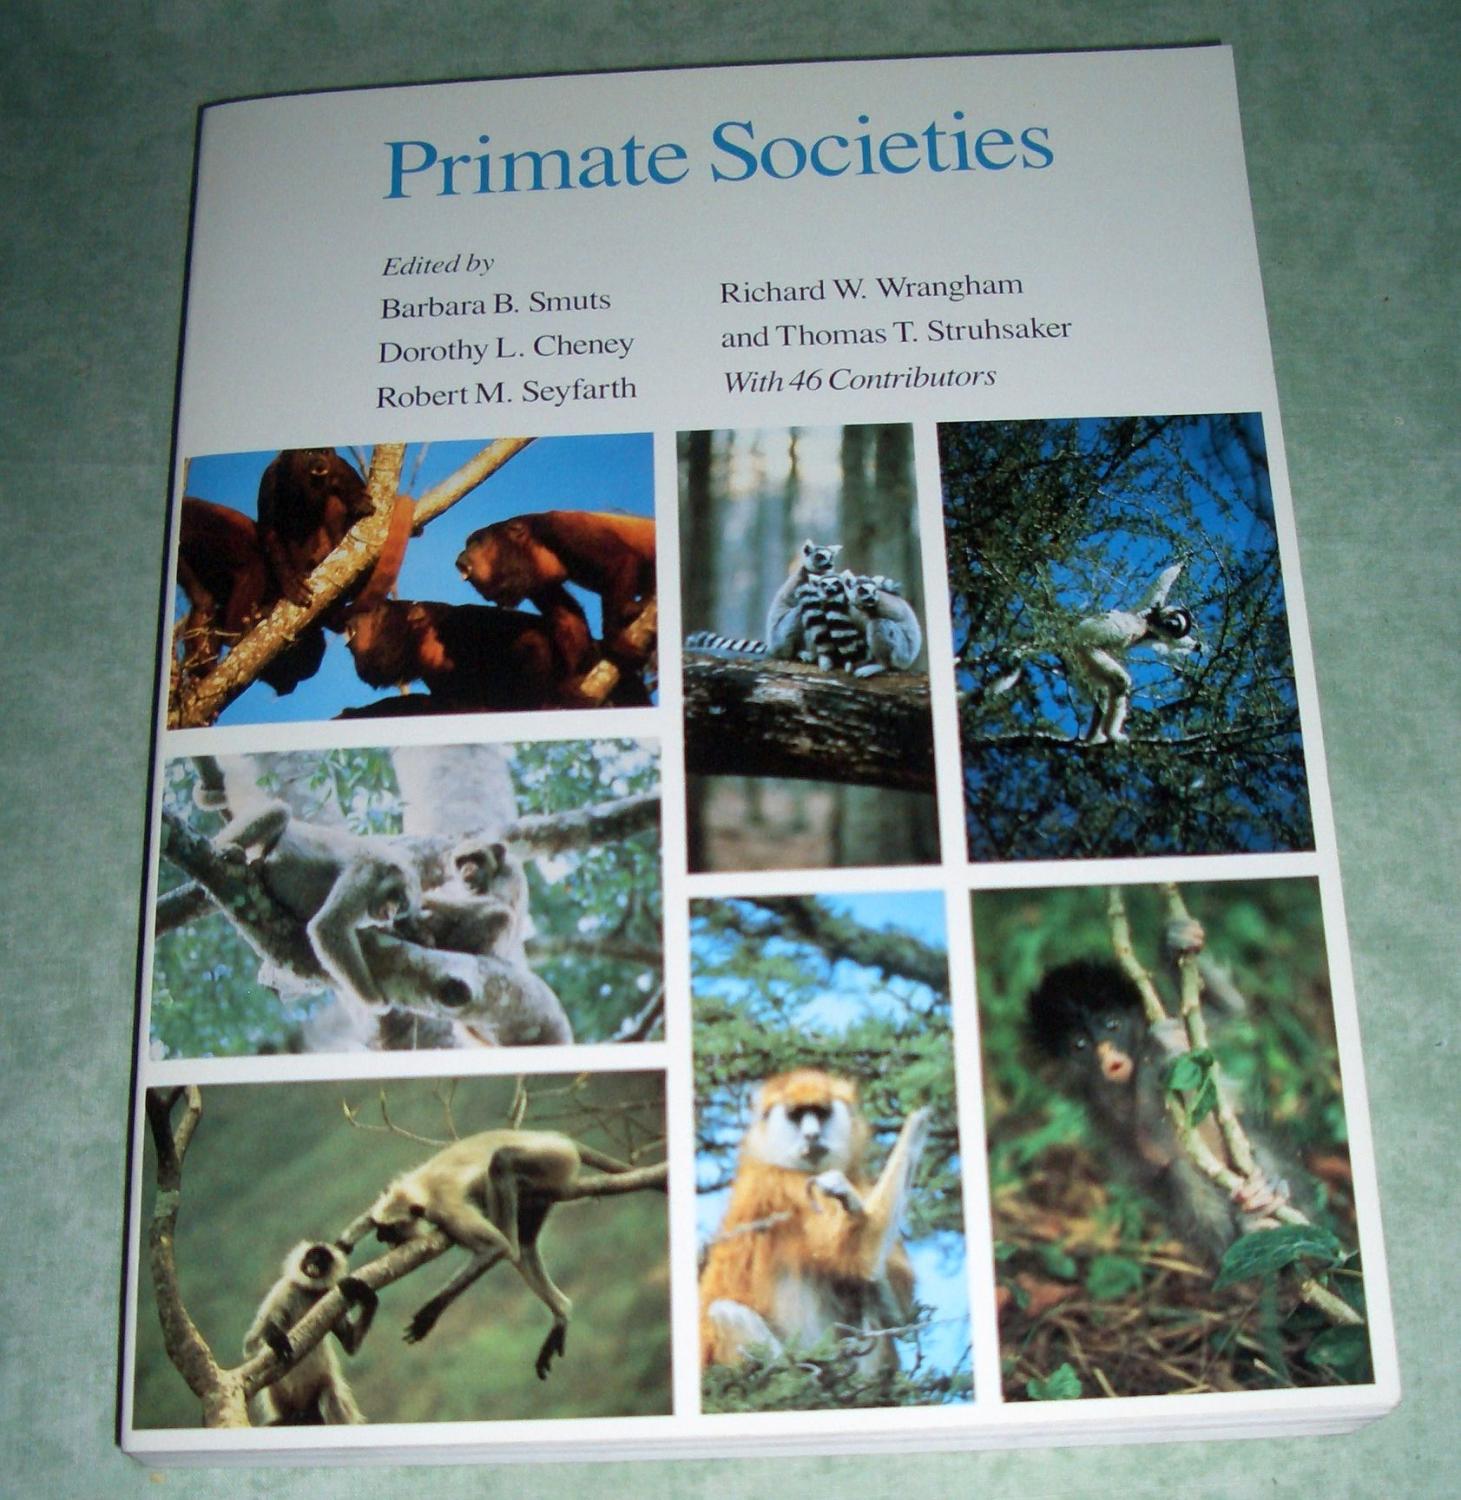 Primate societies. - Zoologie Smuts, Barbara B. et al. (Ed.).